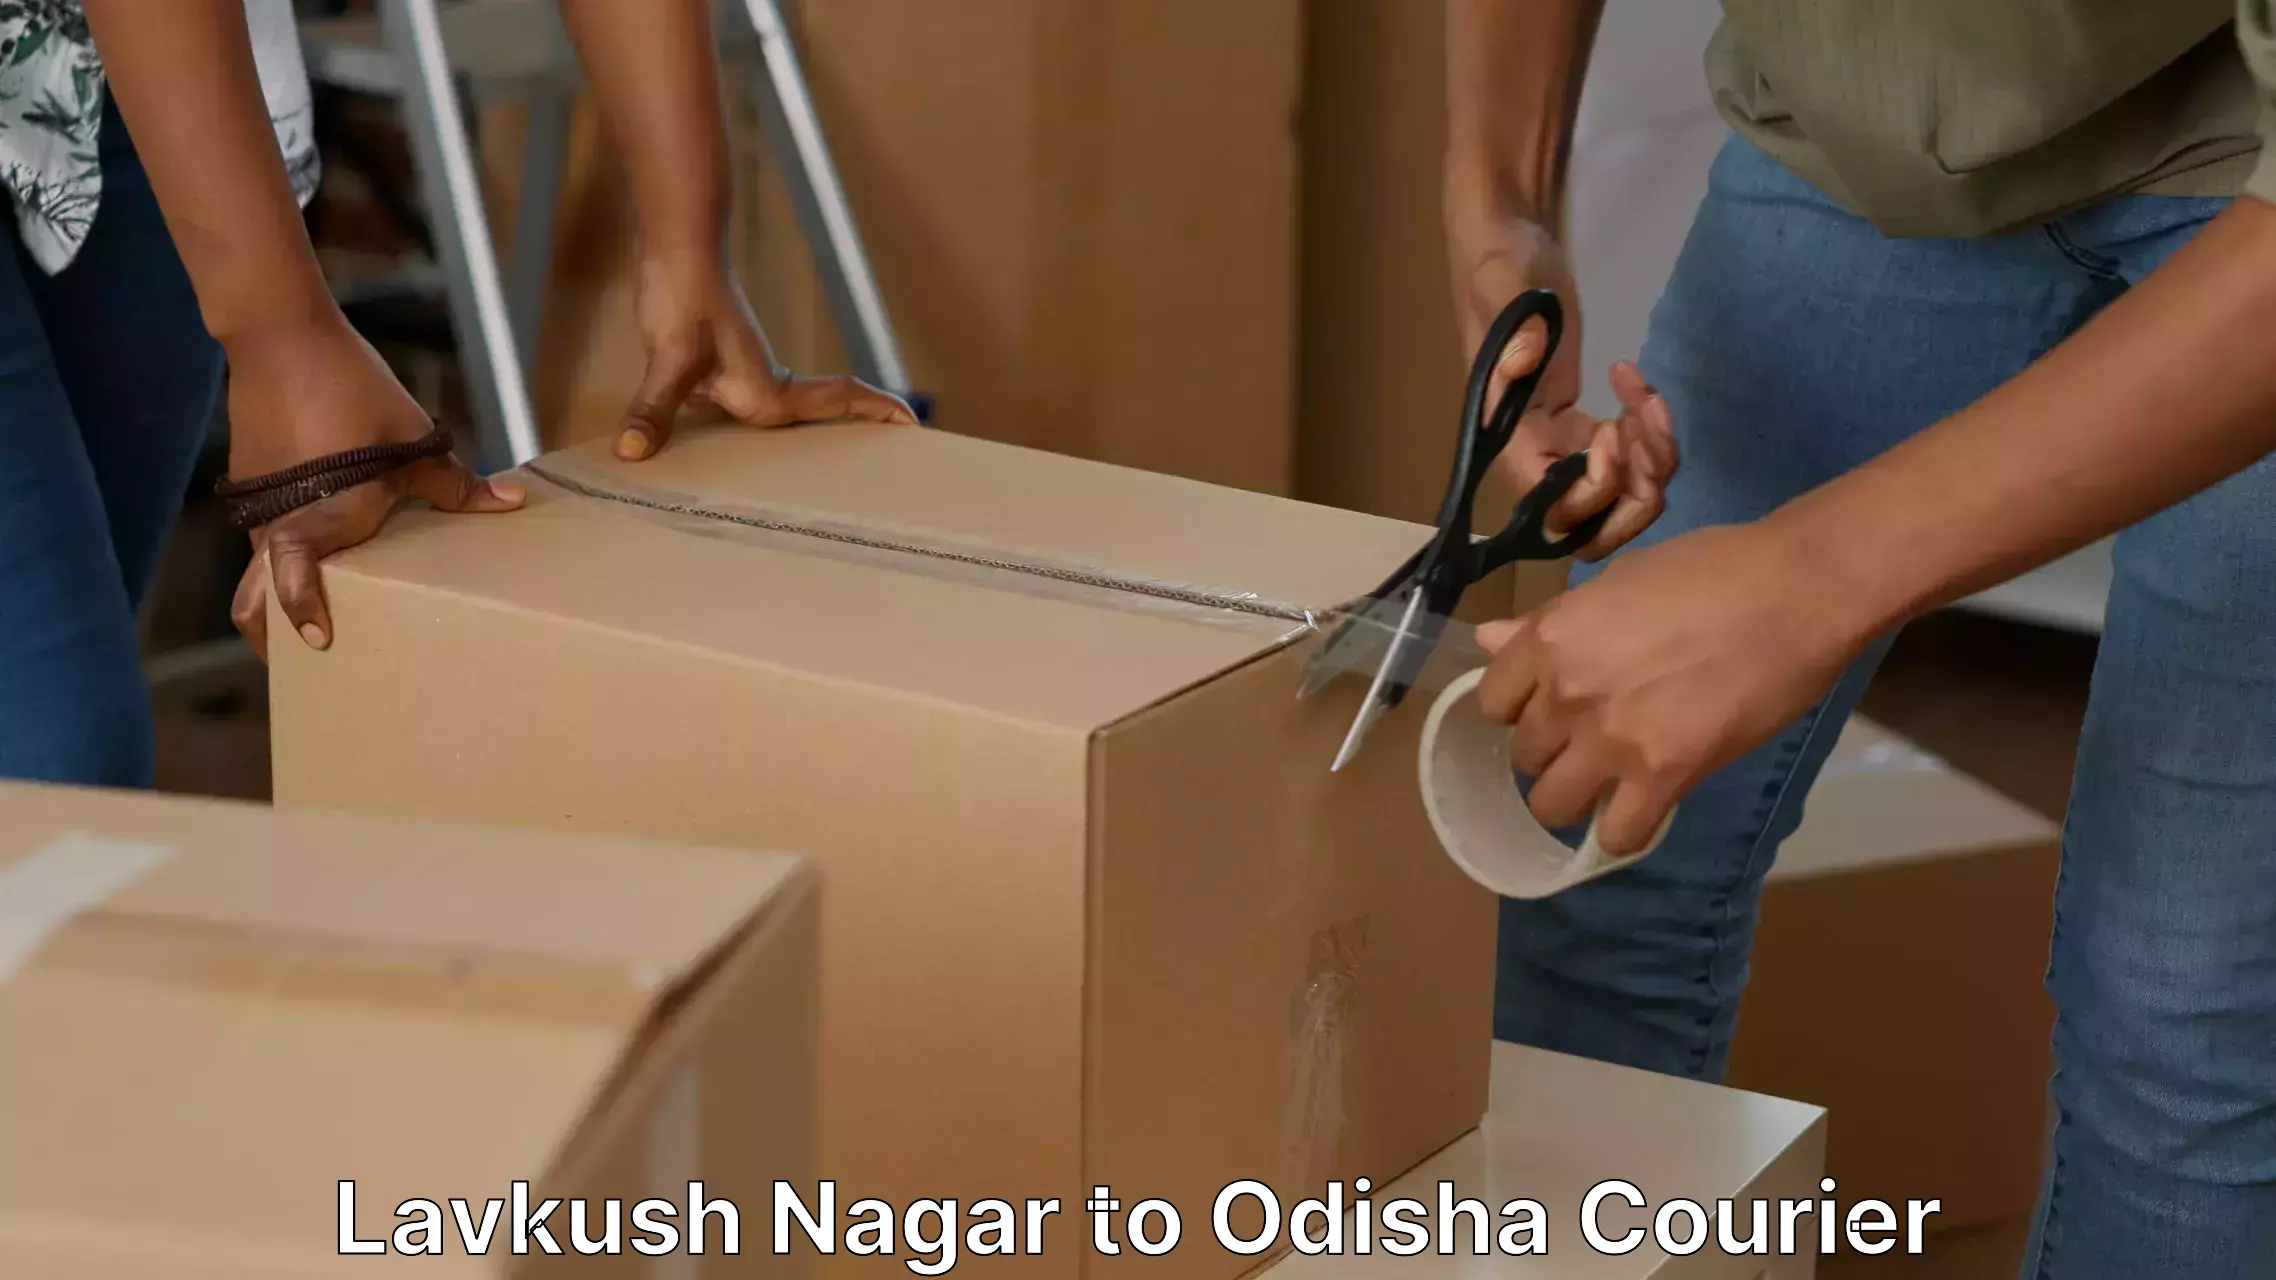 Furniture transport professionals Lavkush Nagar to Asika